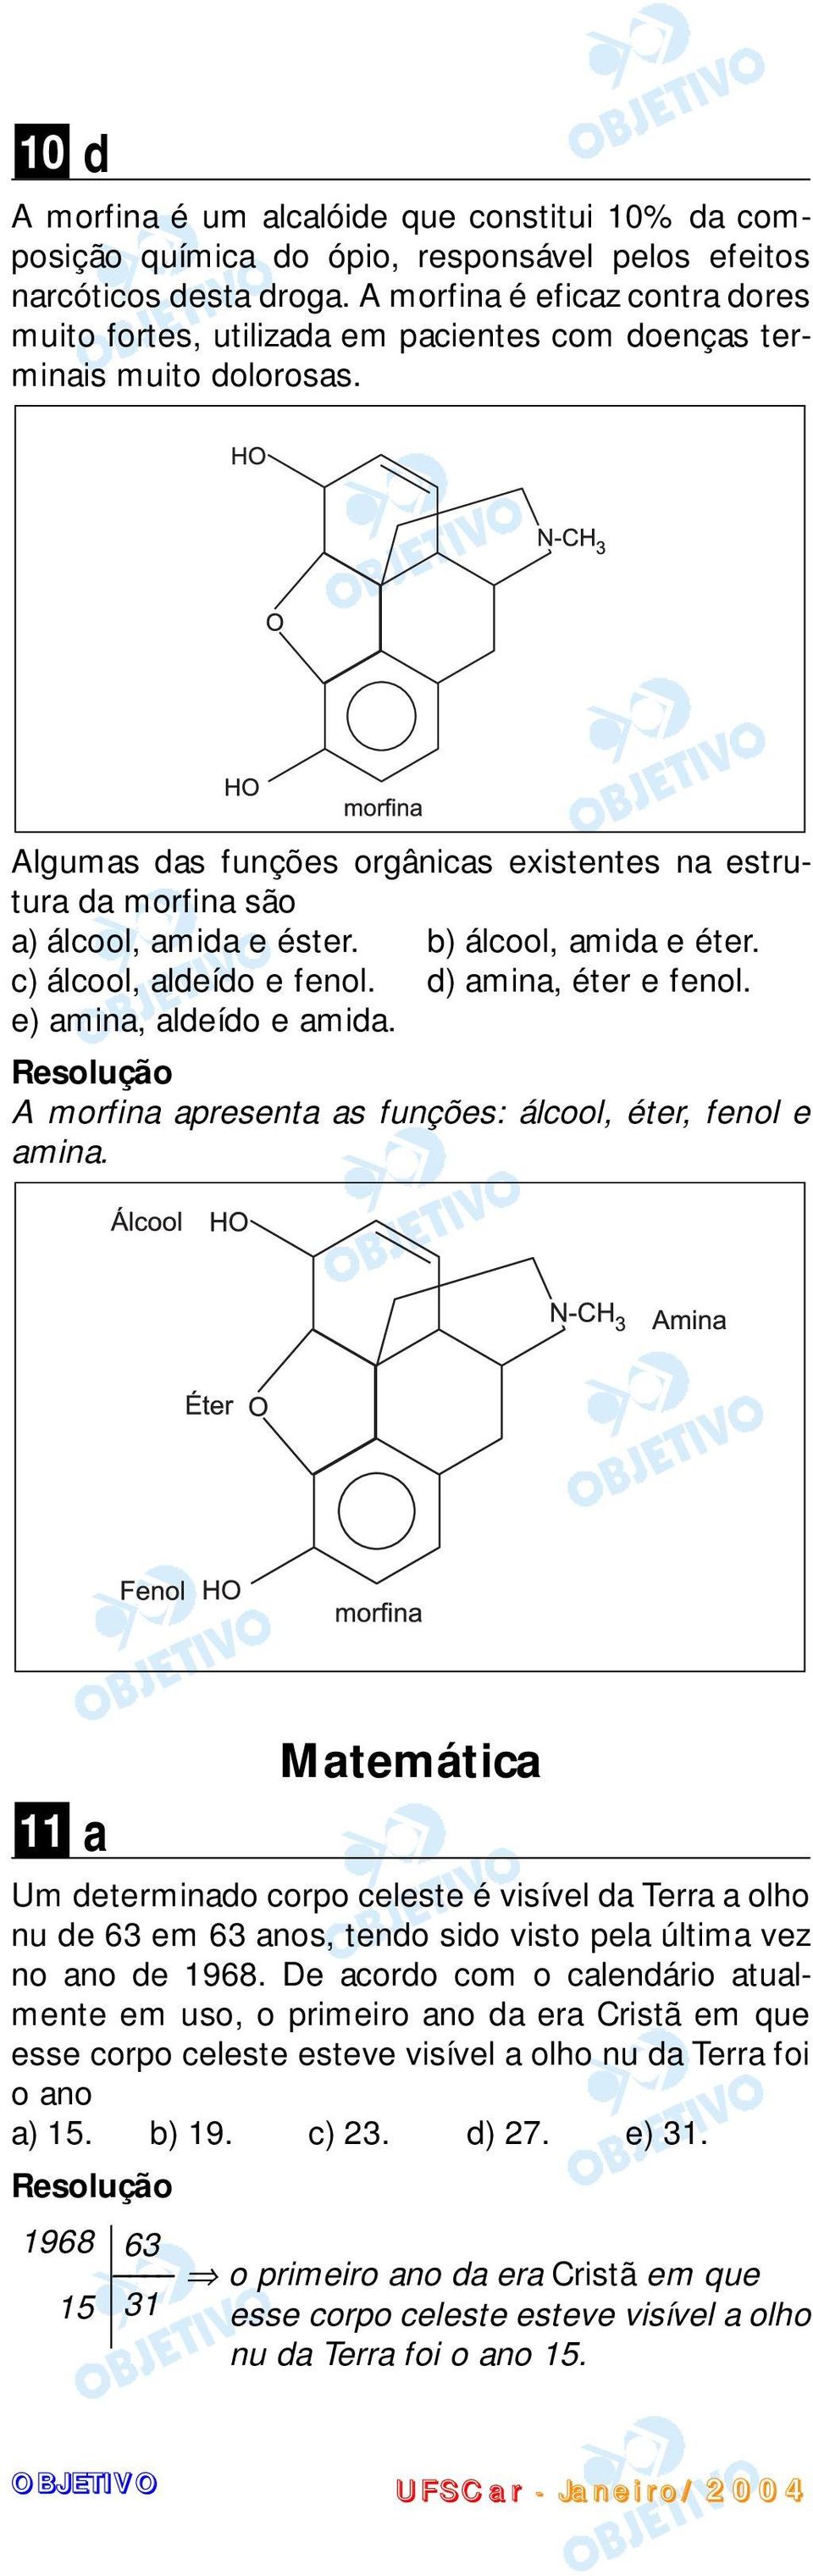 Algumas das funções orgânicas existentes na estrutura da morfina são a) álcool, amida e éster. b) álcool, amida e éter. c) álcool, aldeído e fenol. d) amina, éter e fenol. e) amina, aldeído e amida.